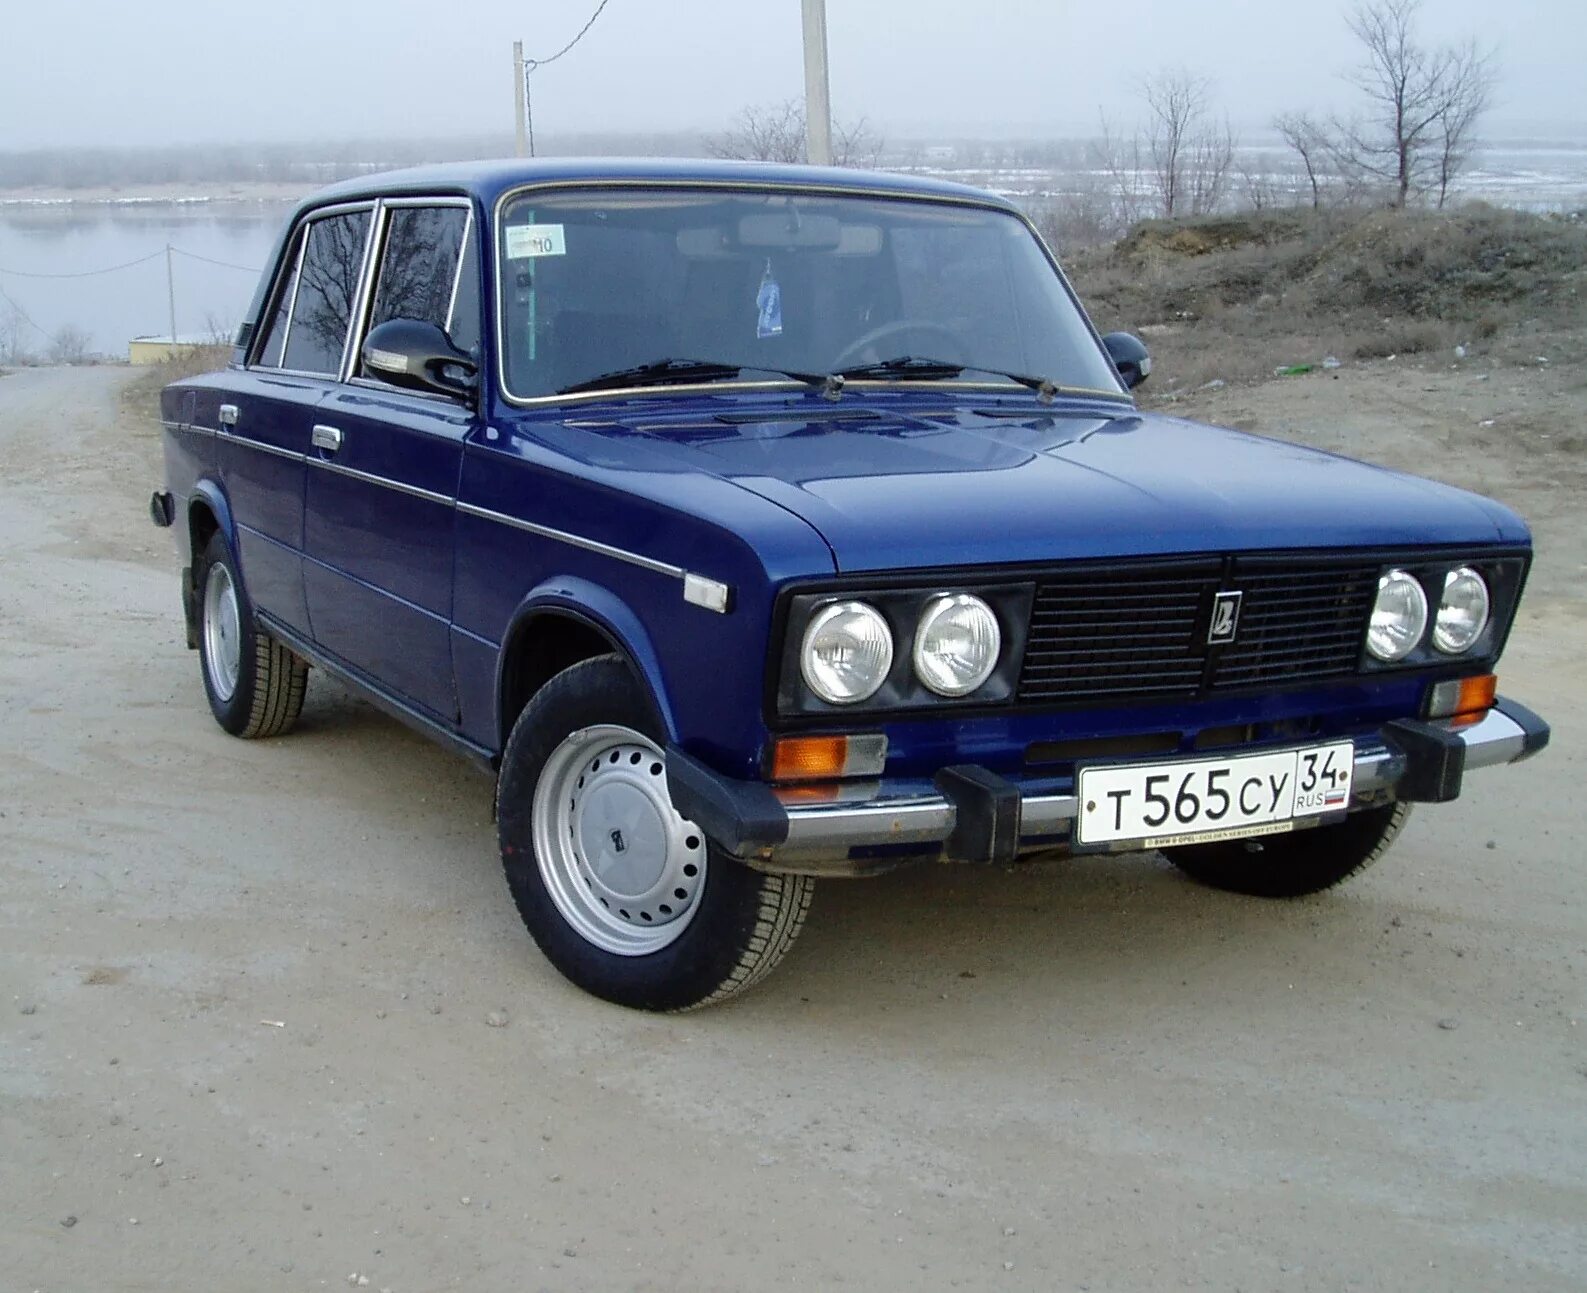 Купить машину в волгоградской области. ВАЗ 2106 синяя Балтика. ВАЗ 2107 цвет Балтика. ВАЗ 2106 307. ВАЗ 2106 цвет синяя Балтика.